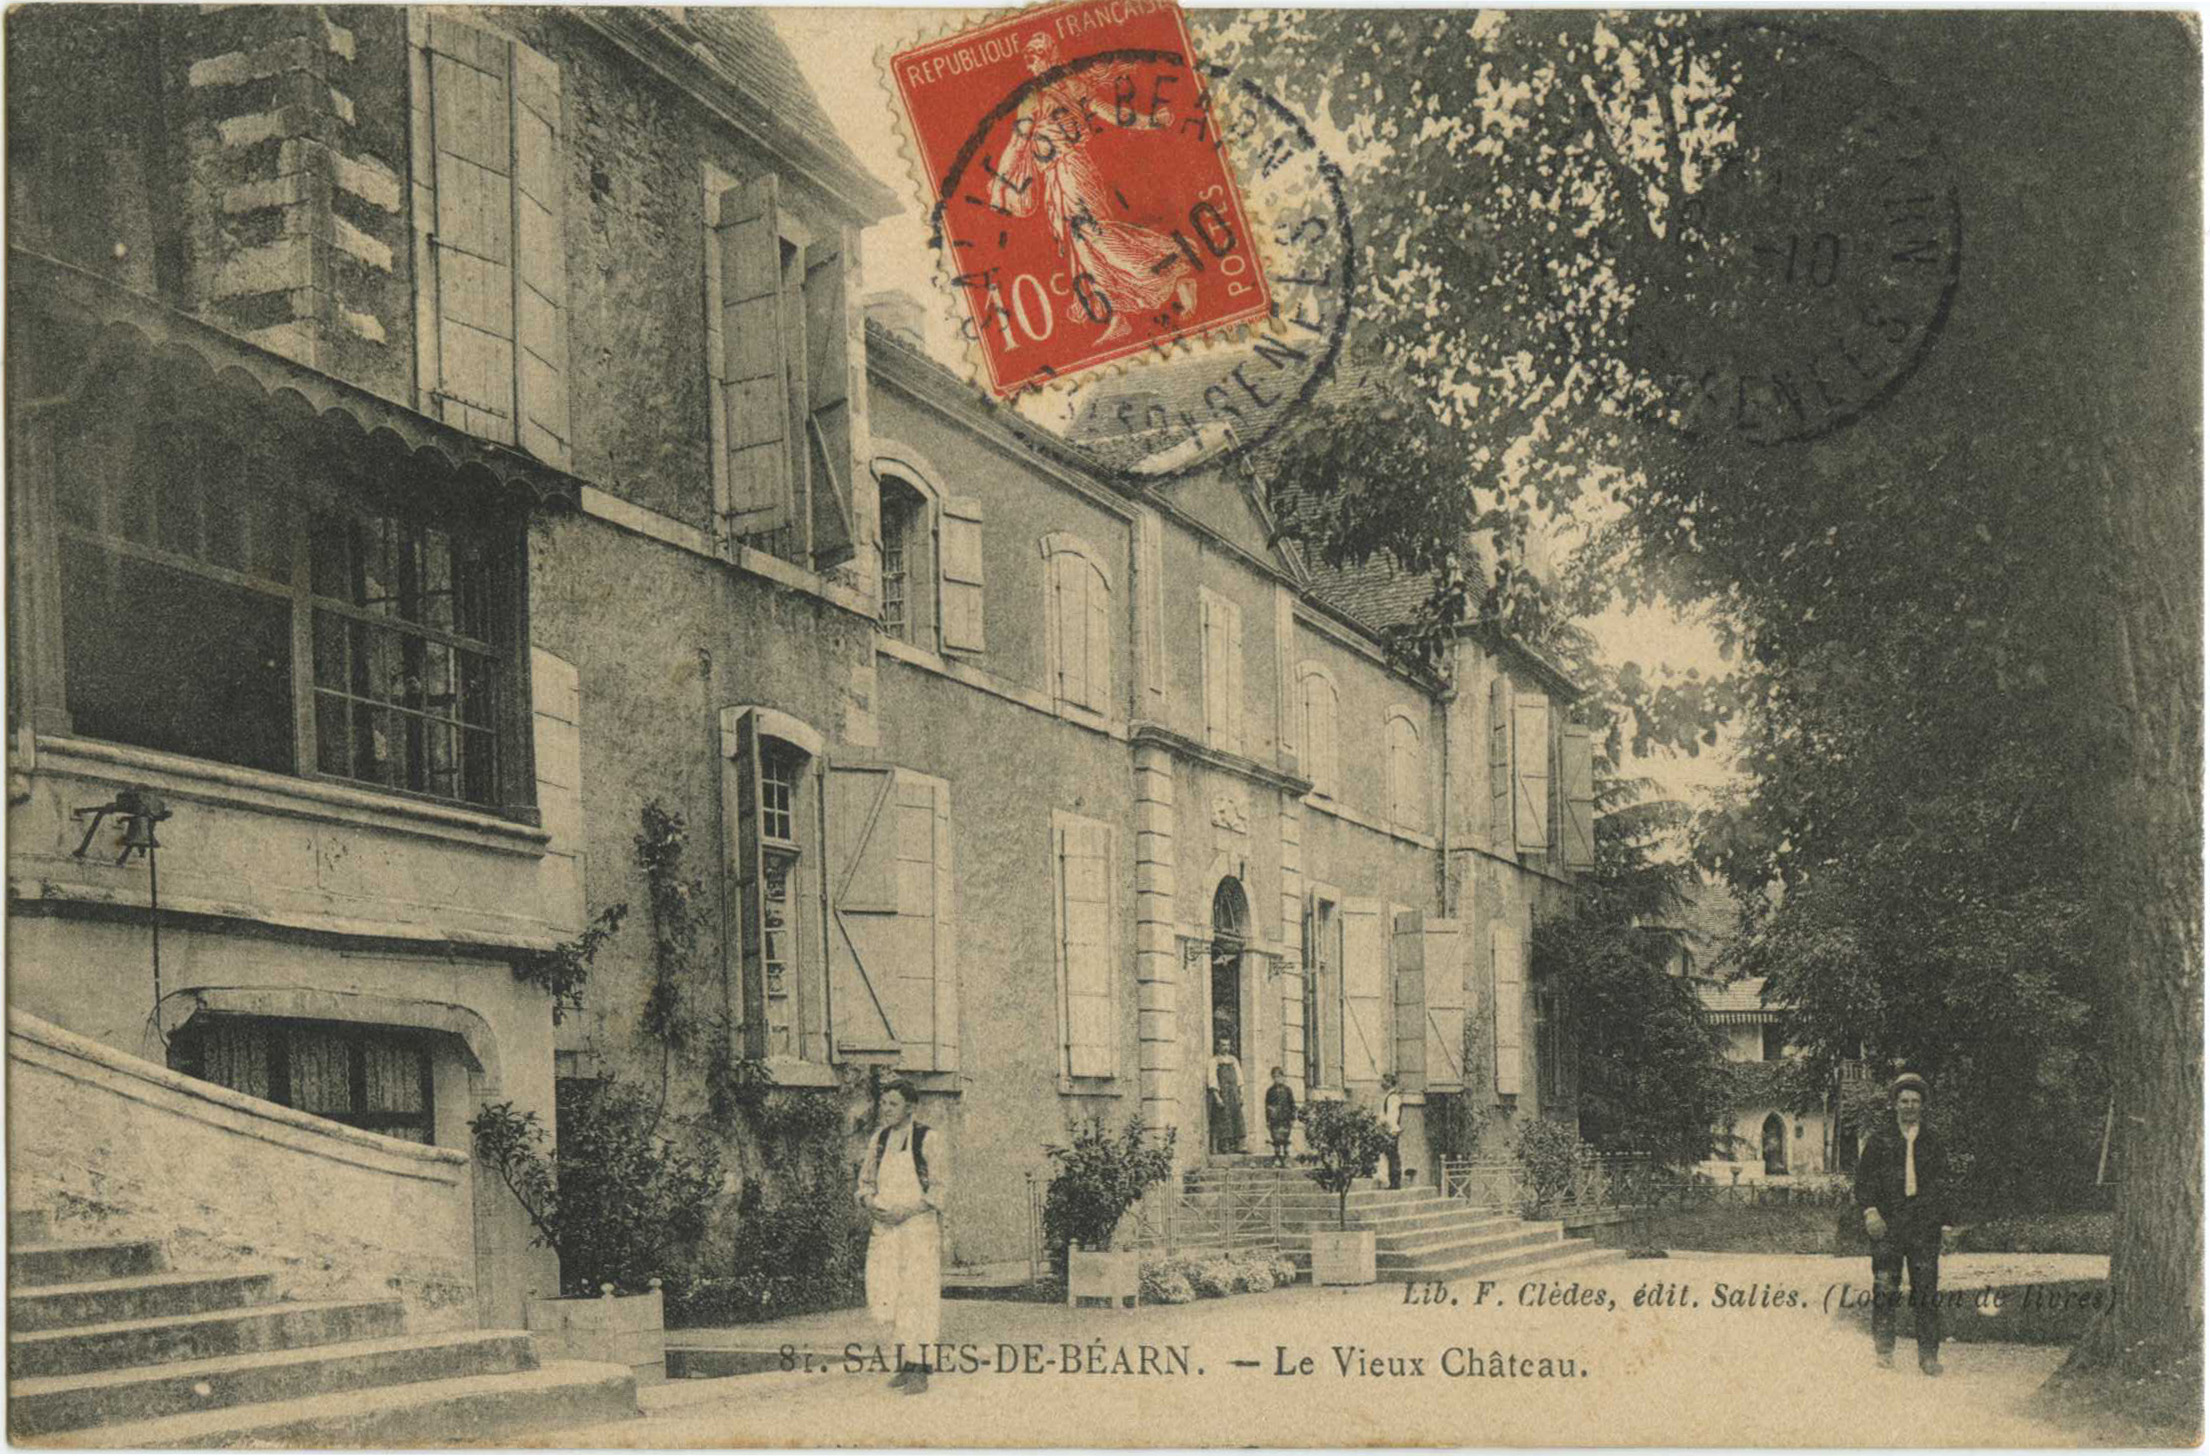 Salies-de-Béarn - Le Vieux Château.